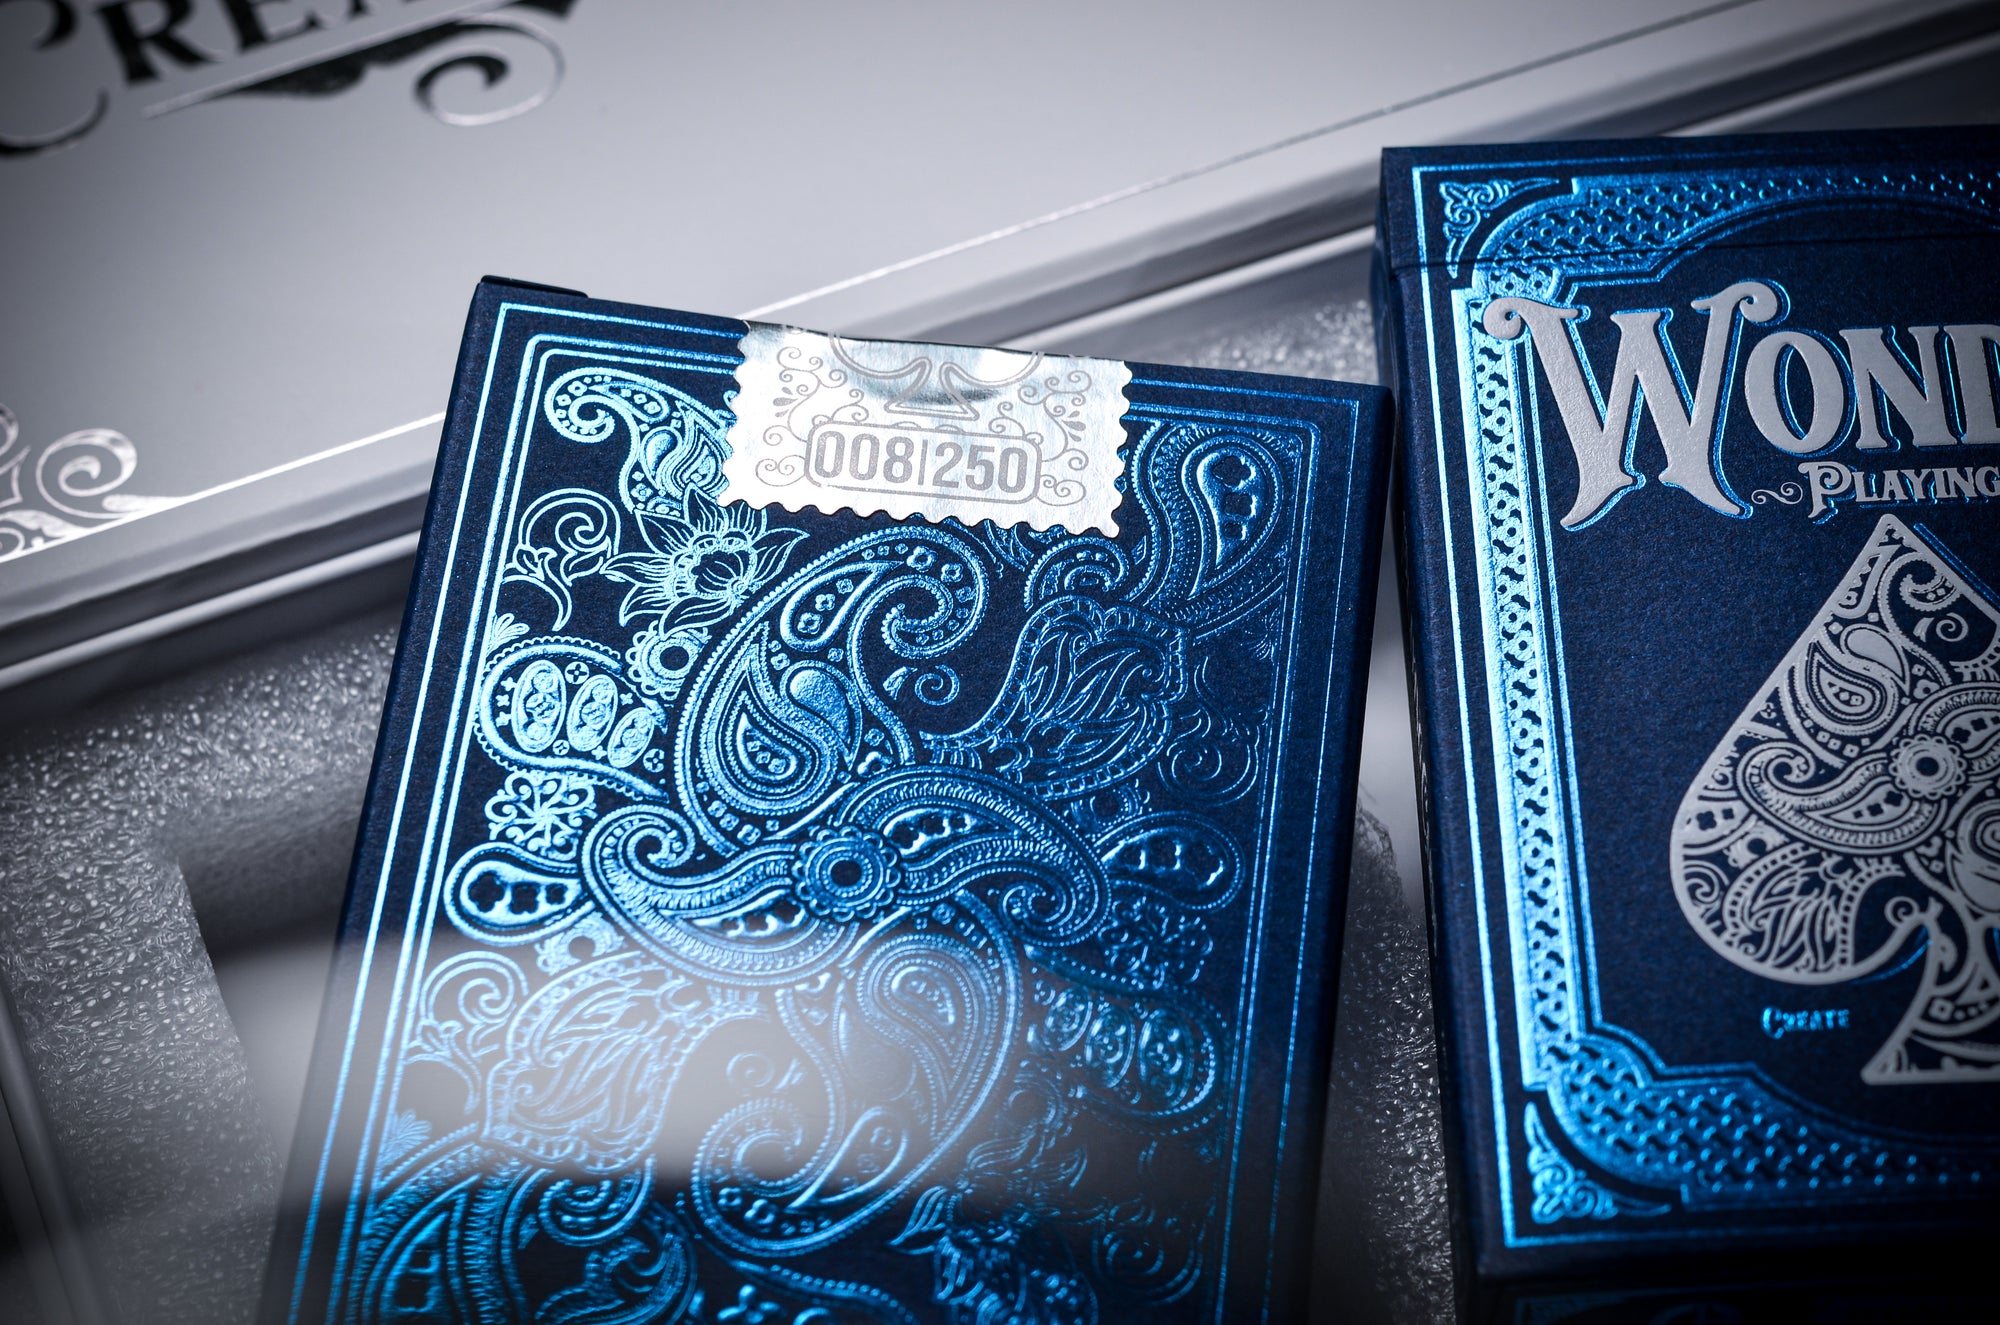 Blue Wonder Collector Set - Silver Gilded Deck